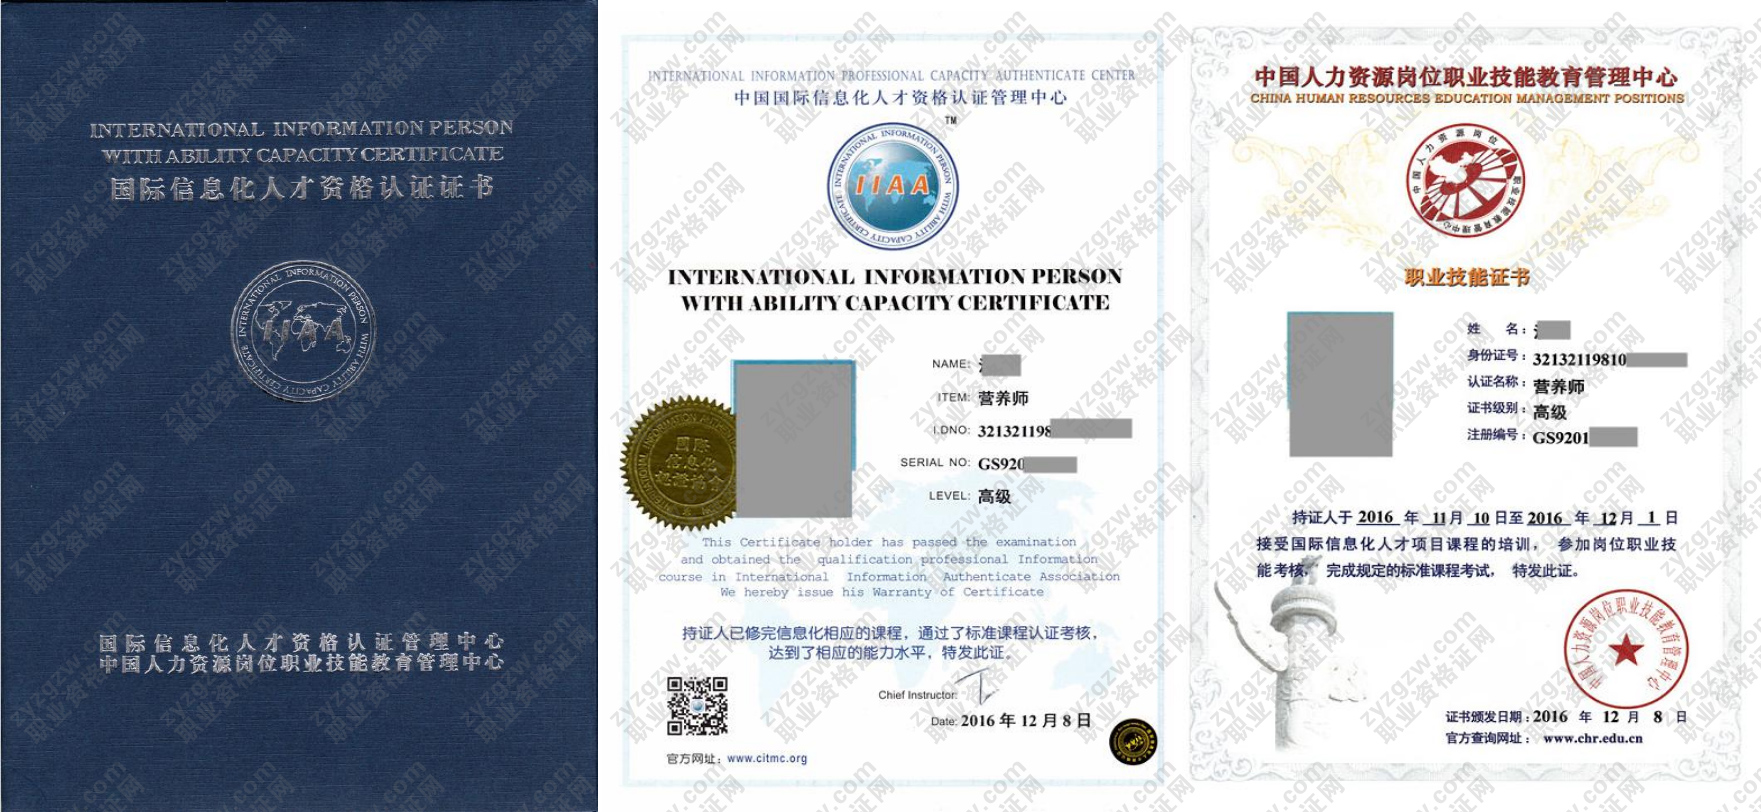 中国人力资源岗位职业技能教育管理中心 营养师 国际信息化人才资格认证证书